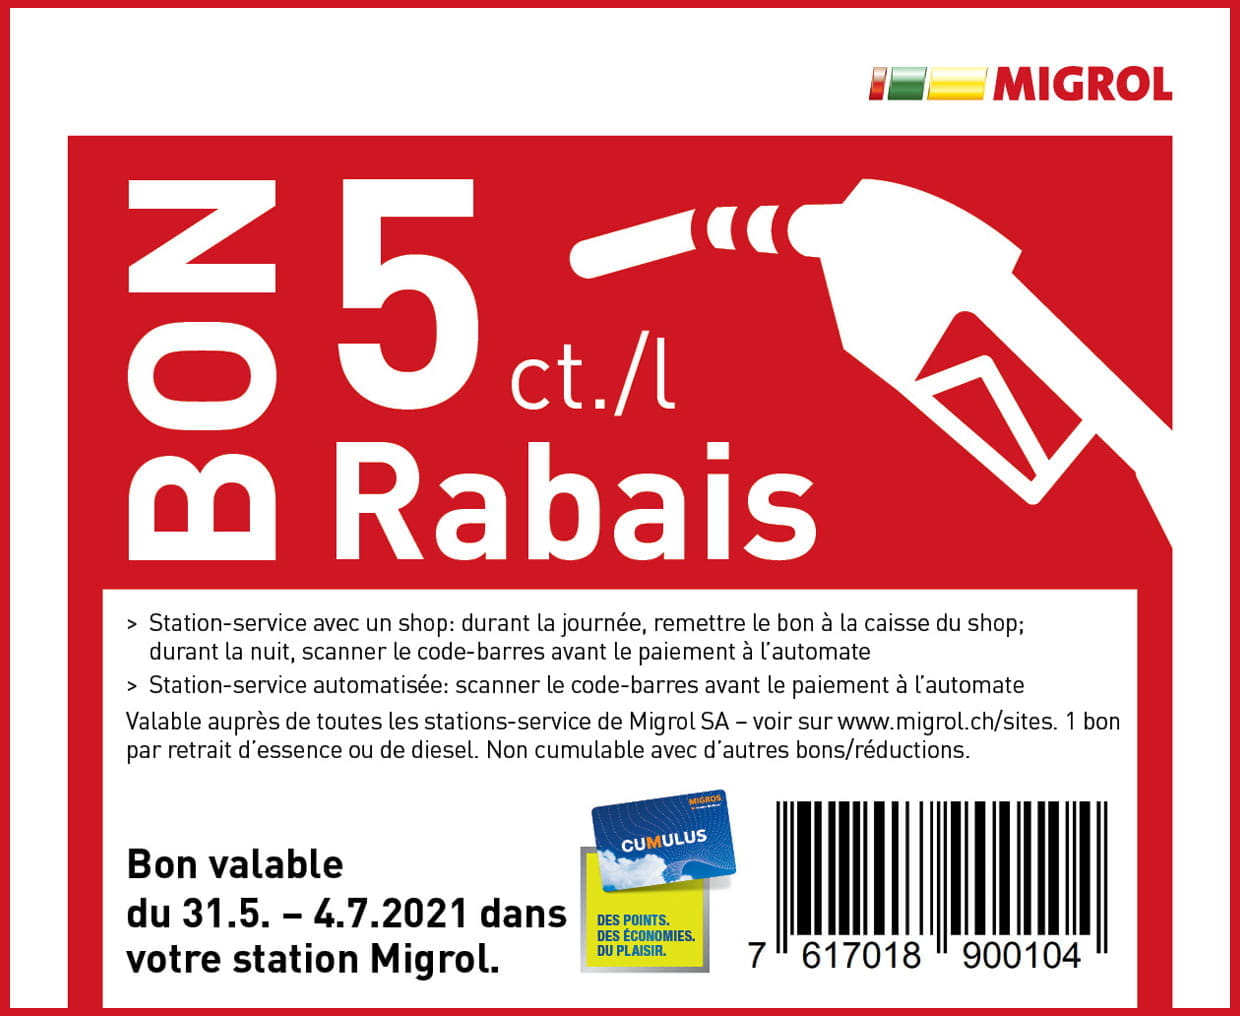 Migrol - Réduction de 5ct/Lt sur l' essence et le diesel - RADIN.ch  échantillon concours gratuit suisse bons plans